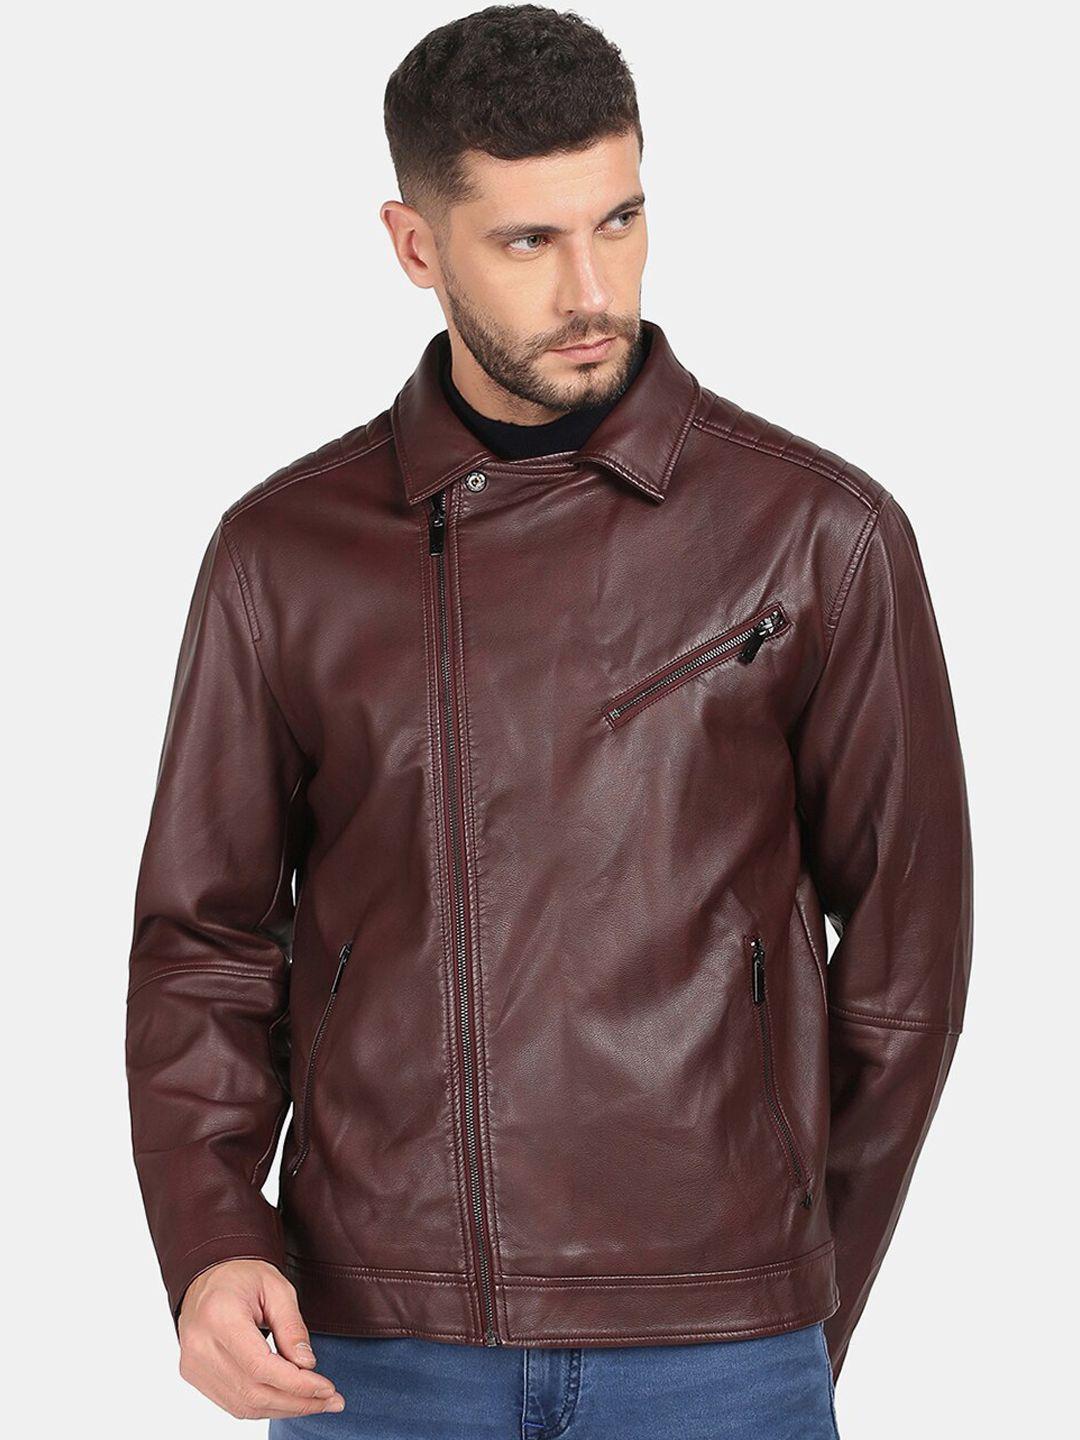 blackberrys men brown leather jacket